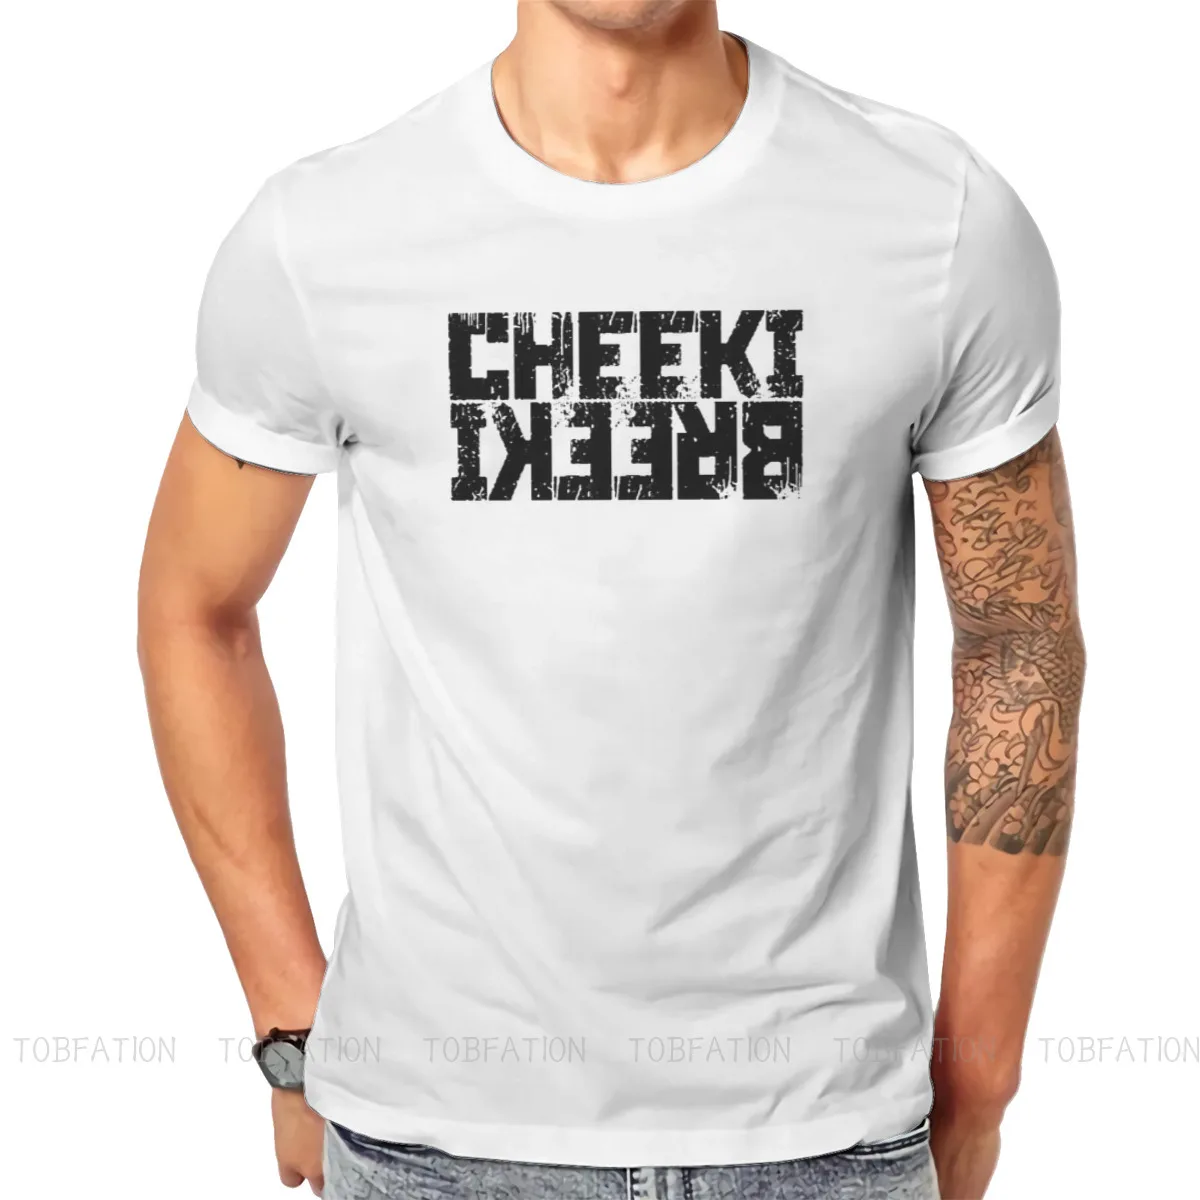 Фото Уникальная футболка Cheeki Breeki бег из тарков медведя USEC Scavs высокое качество хип-хоп